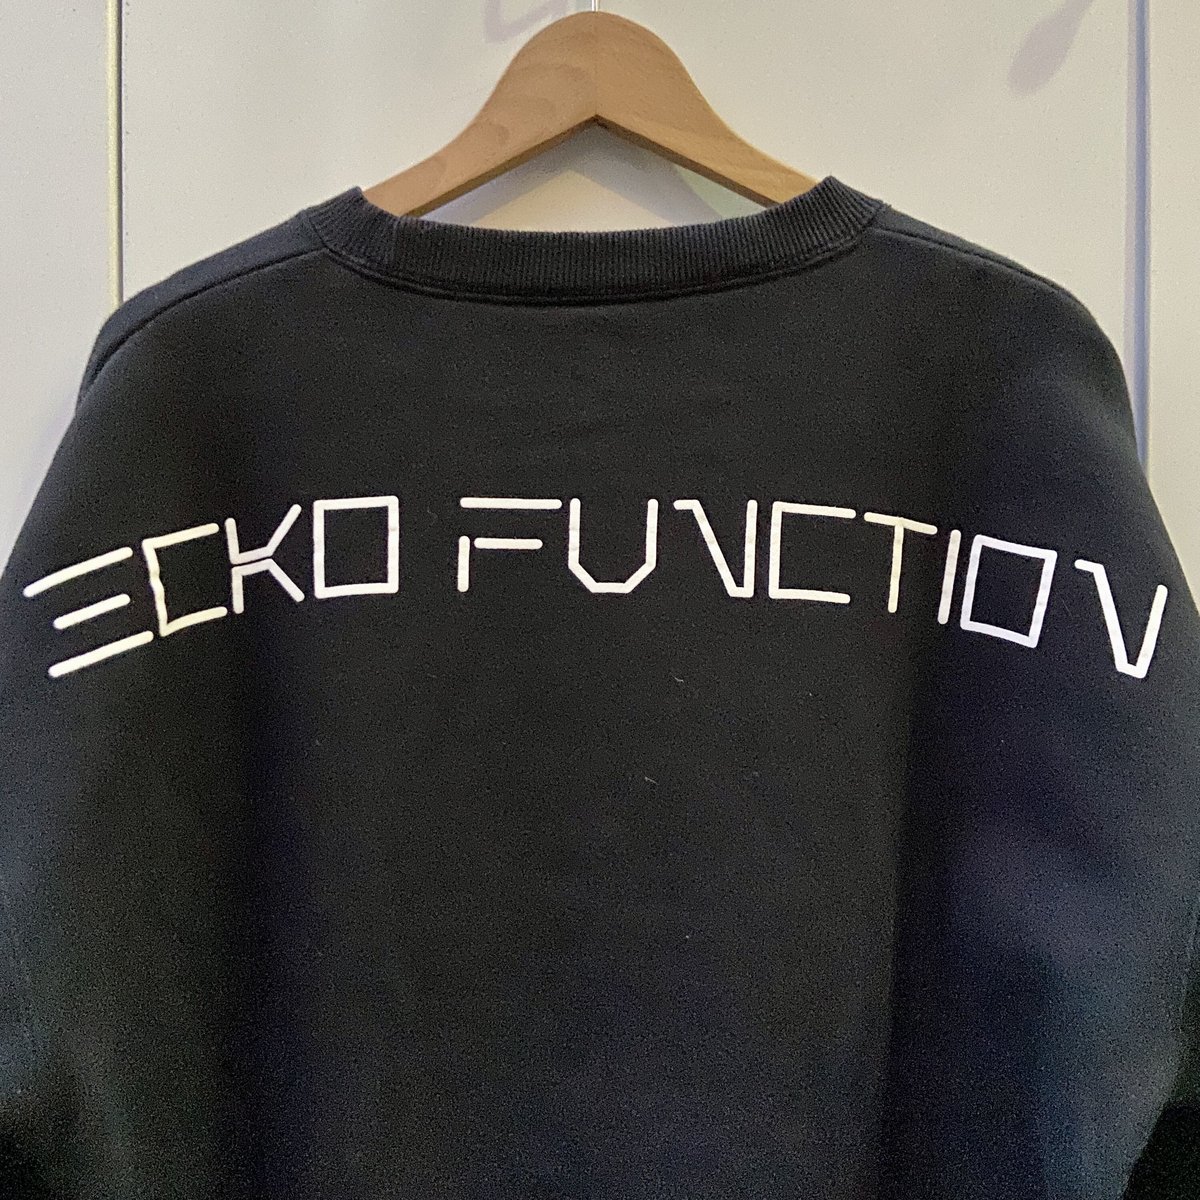 ECKO FUNCTION/エコーファンクション ロゴスウェット 2000年前後 (USED)...